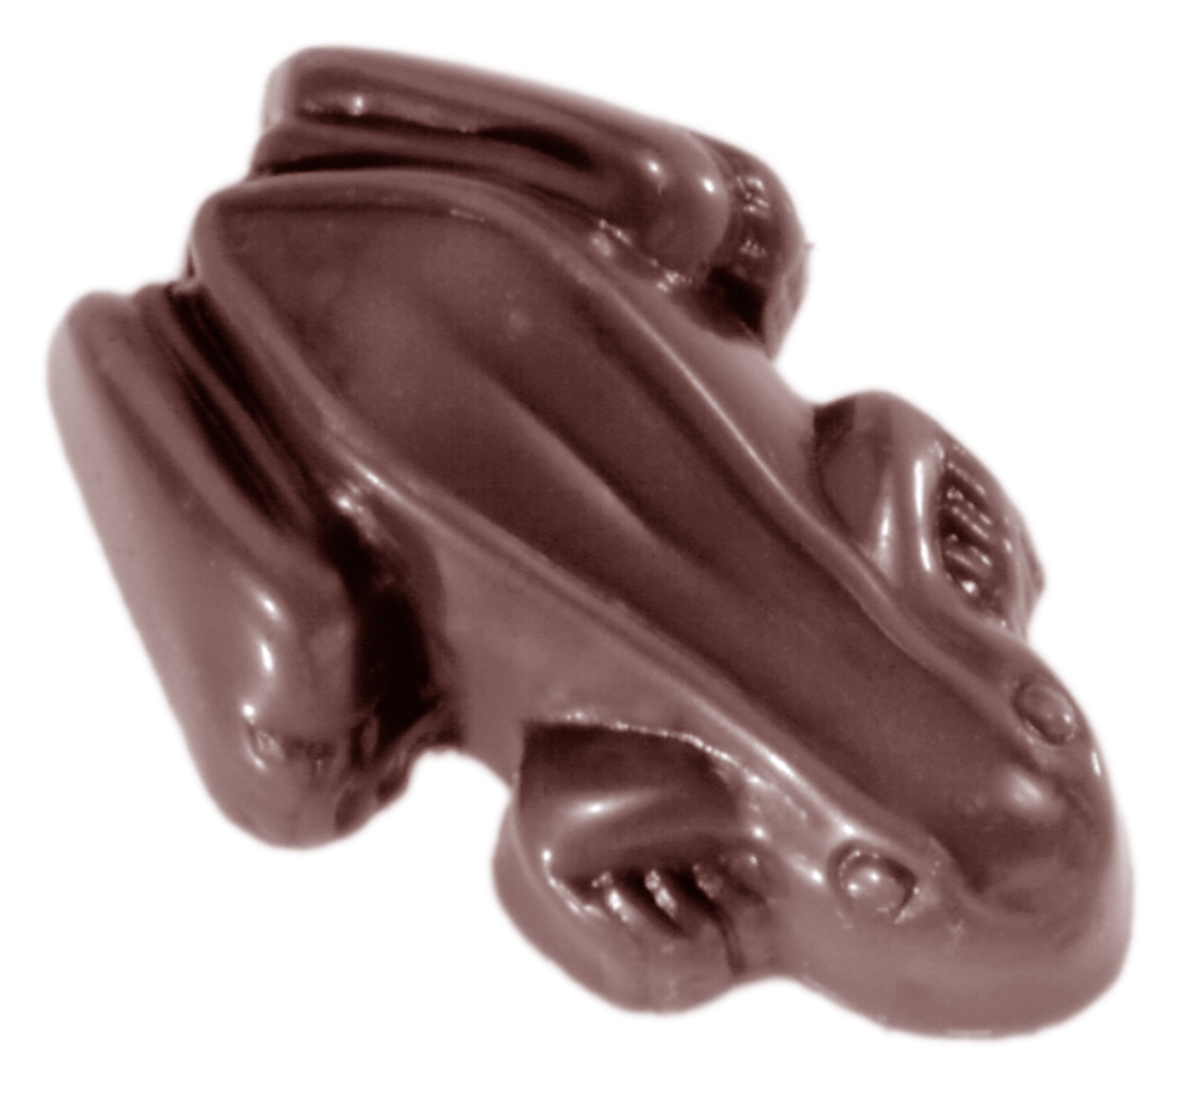 Professionel chokoladeform i polycarbonat - Frog 3 g CW1445